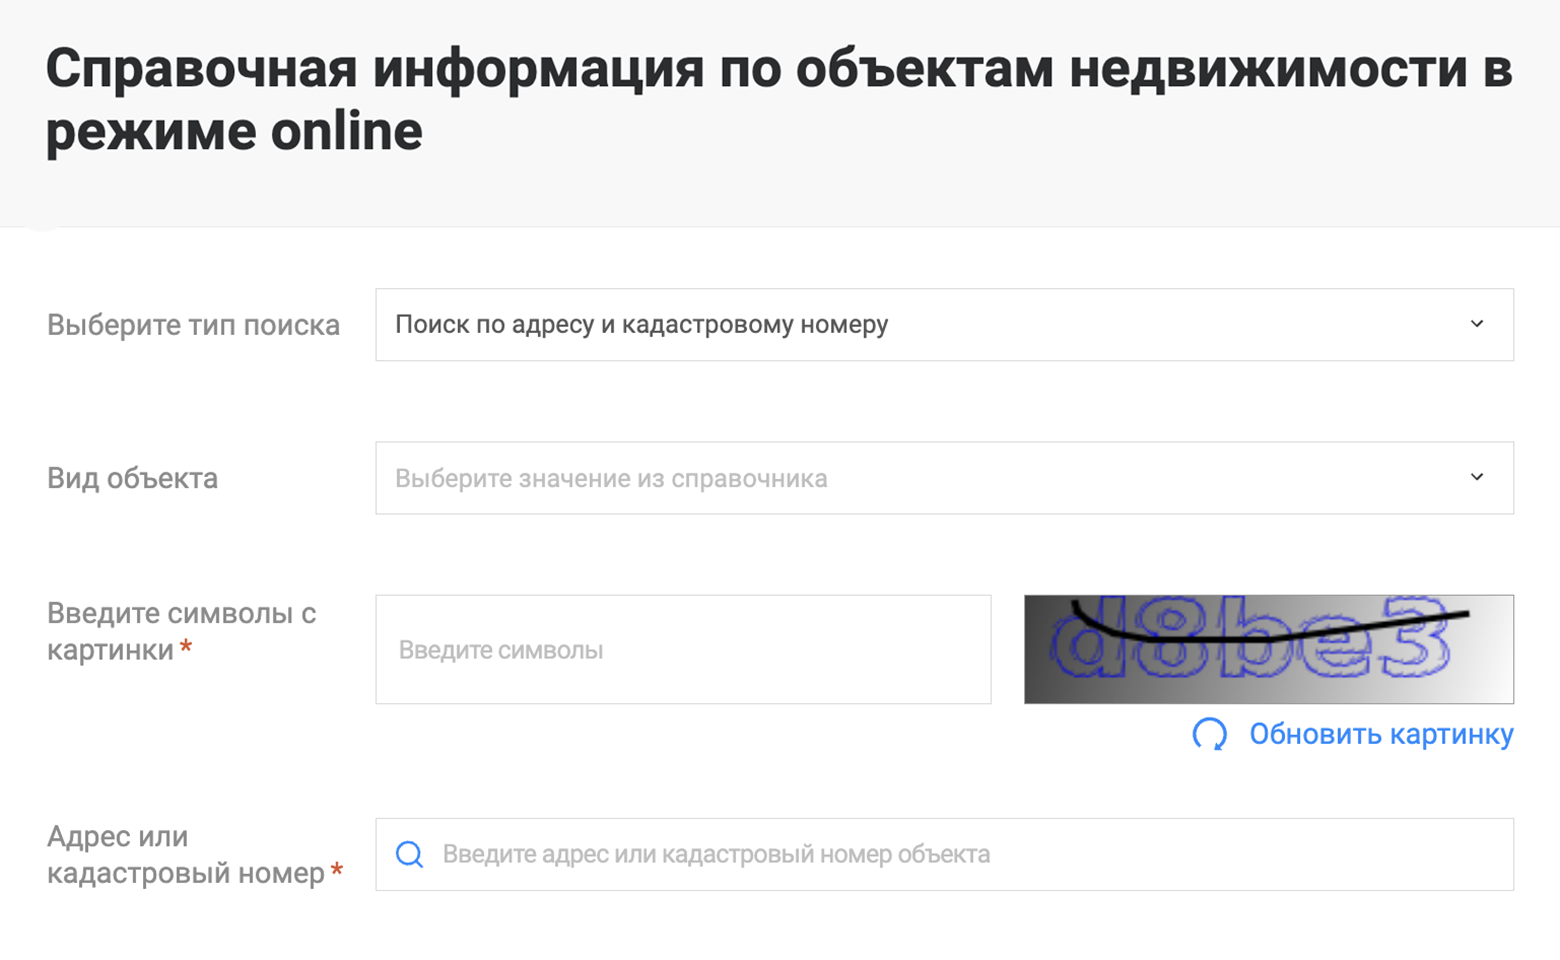 Это форма запроса онлайн-справки. Регистрация на сайте Росреестра не нужна. Источник: rosreestr.ru